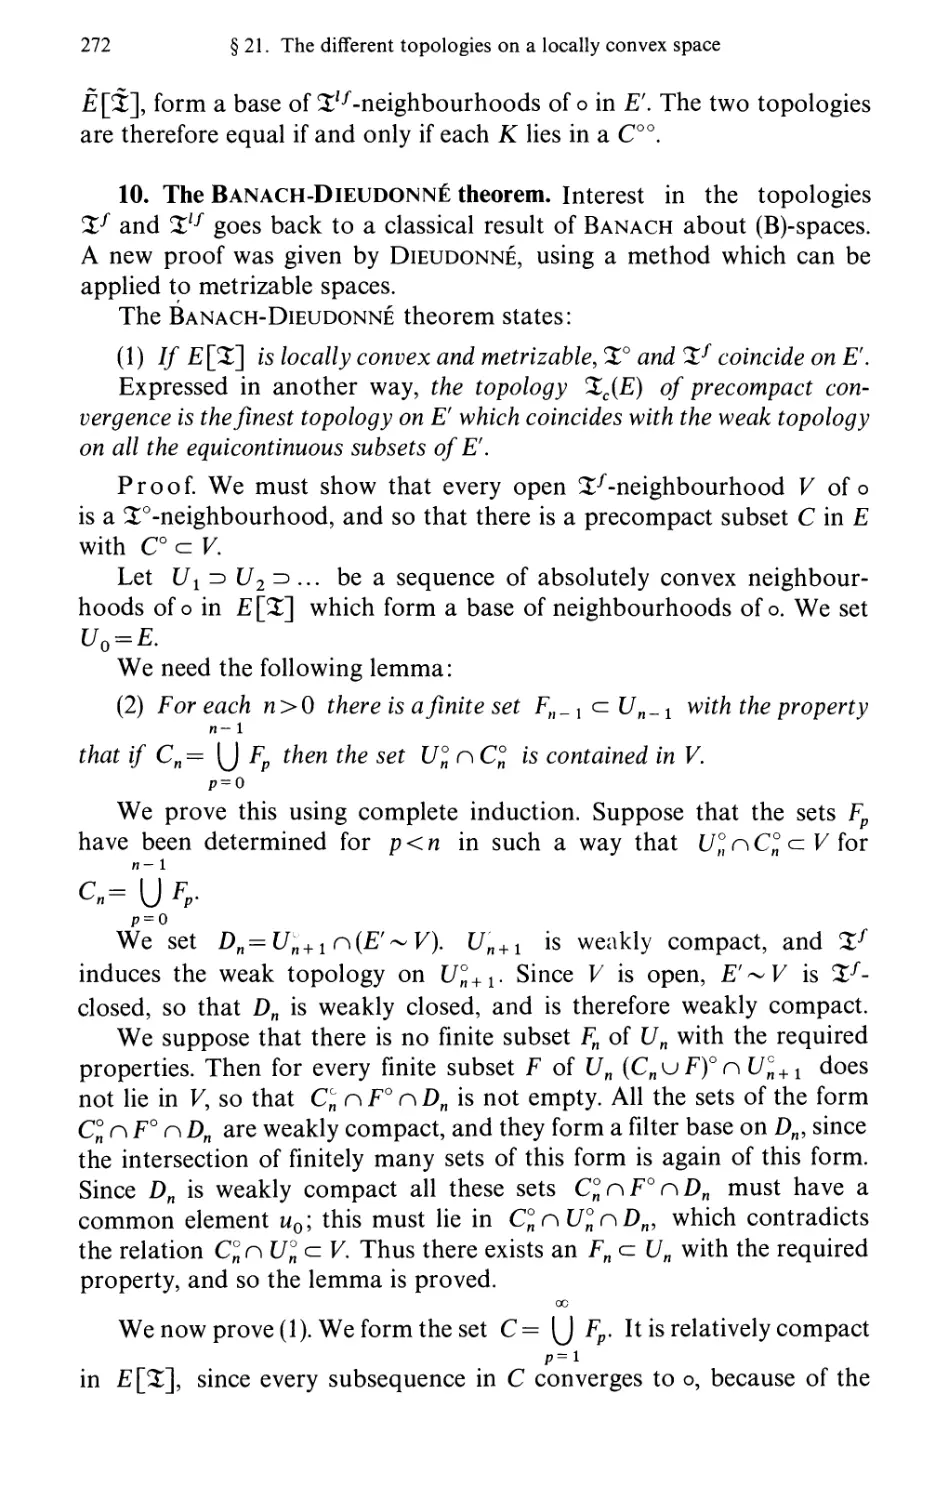 10. The Banach-Dieudonne theorem